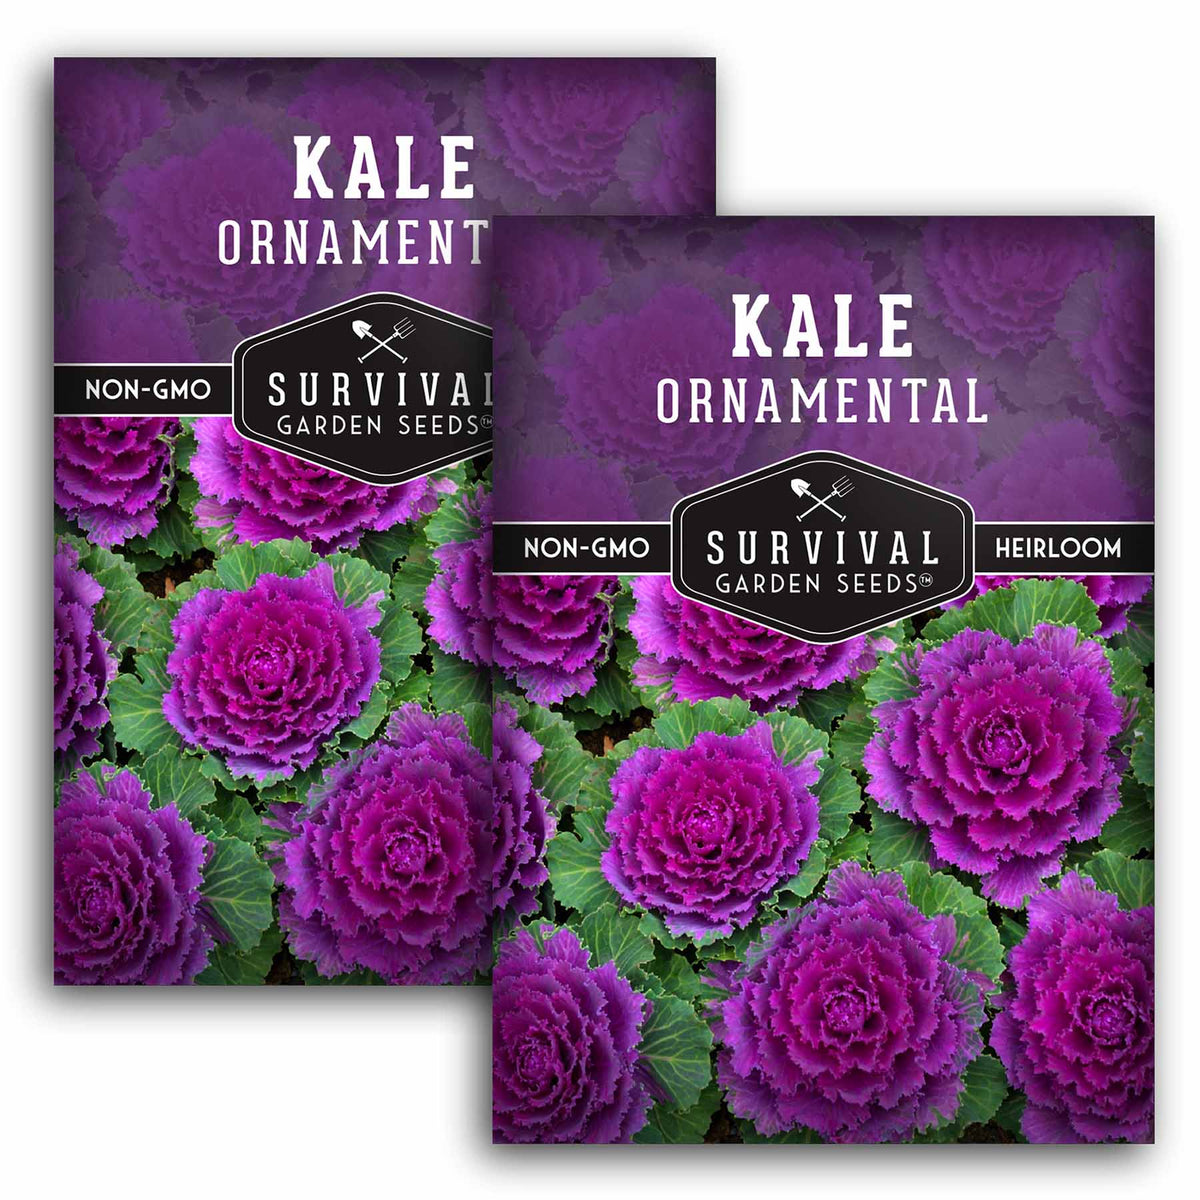 2 packet of Ornamental Kale seeds